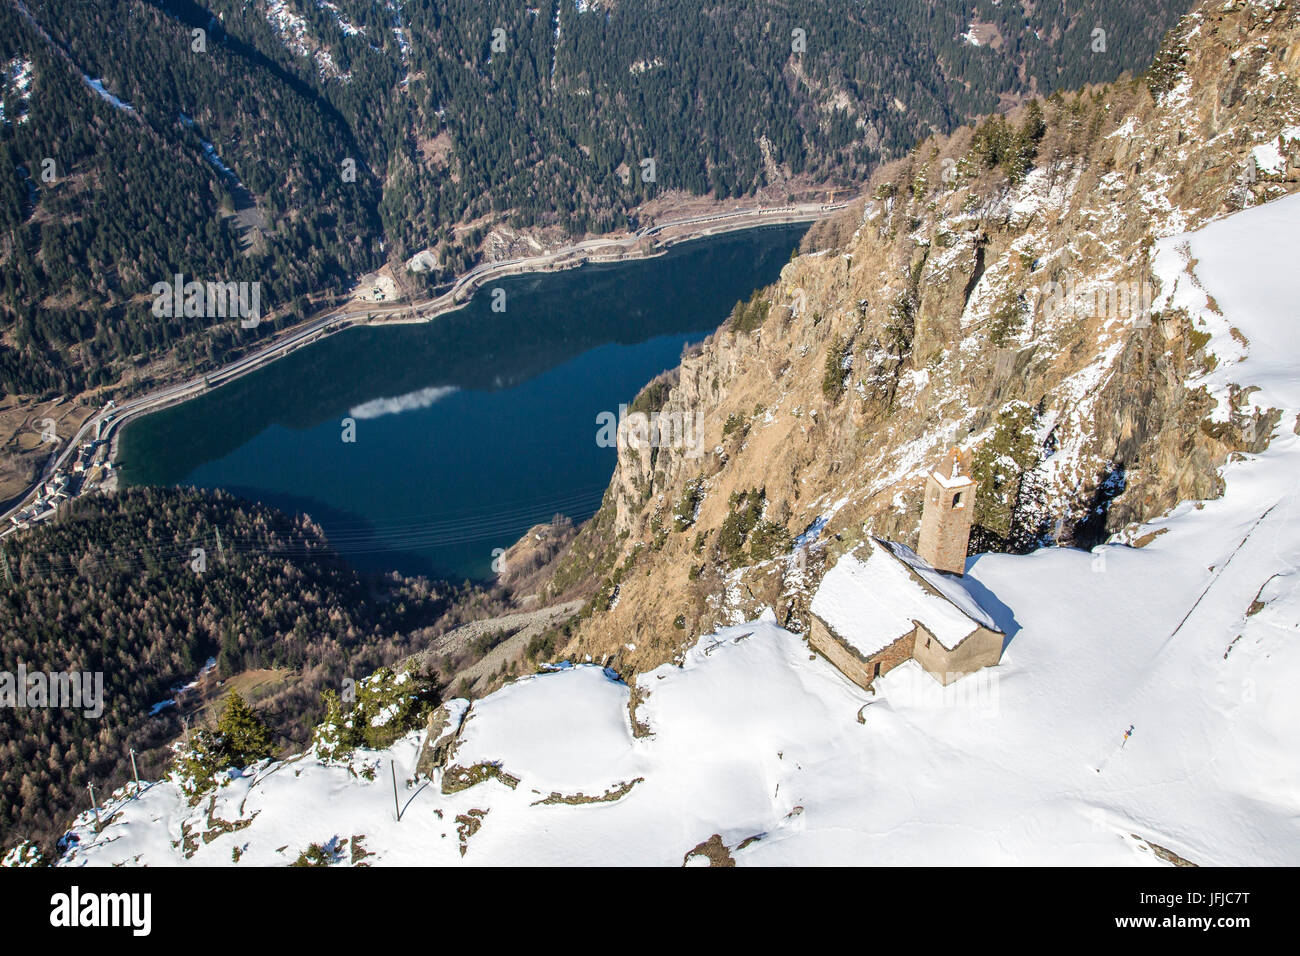 Vista aérea de la iglesia de San Romerio en invierno, el cual fue construido verticalmente hasta el lago de Poschiavo, Alp San Romerio, Brusio, valle de Poschiavo, Cantón Grigioni, Suiza Foto de stock